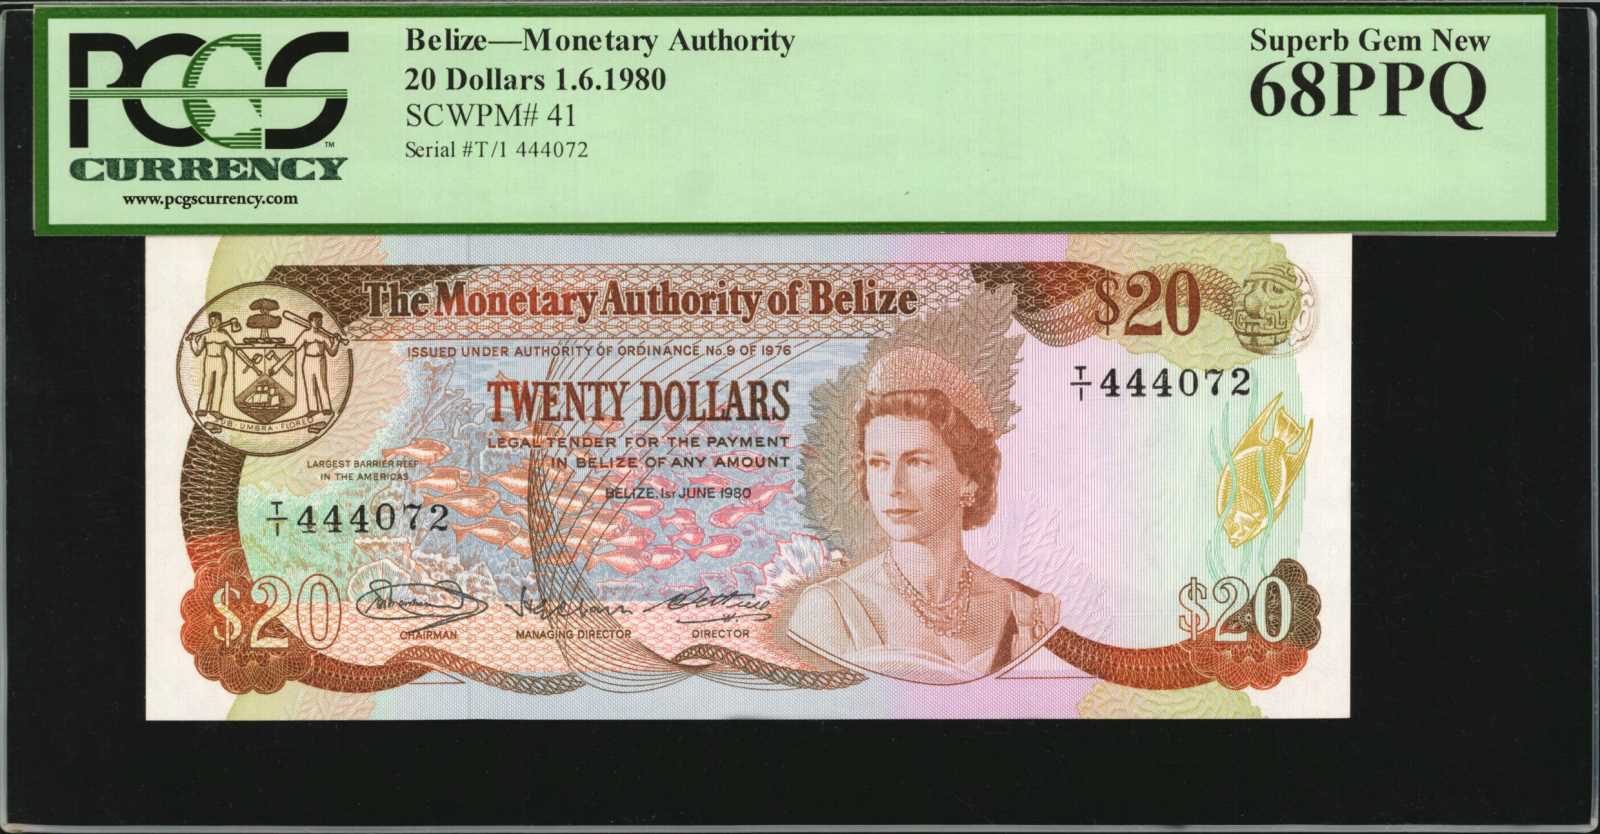 BELIZE. Monetary Authority of Belize. 20 Dollars